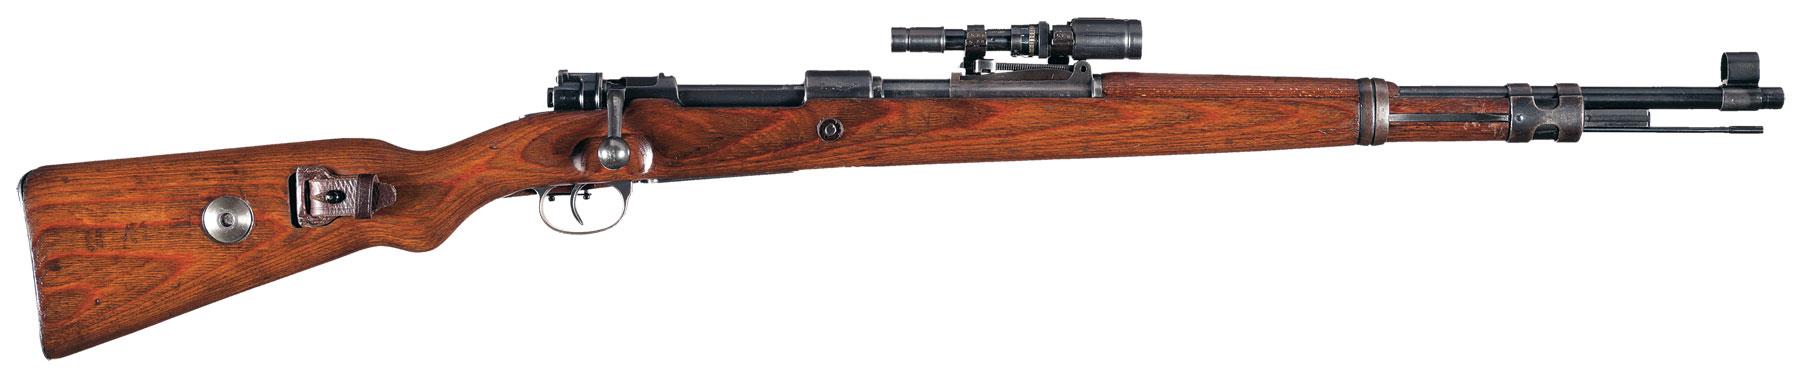 Mount scope Gew 41 Walther German ww2 ZF41 sniper 